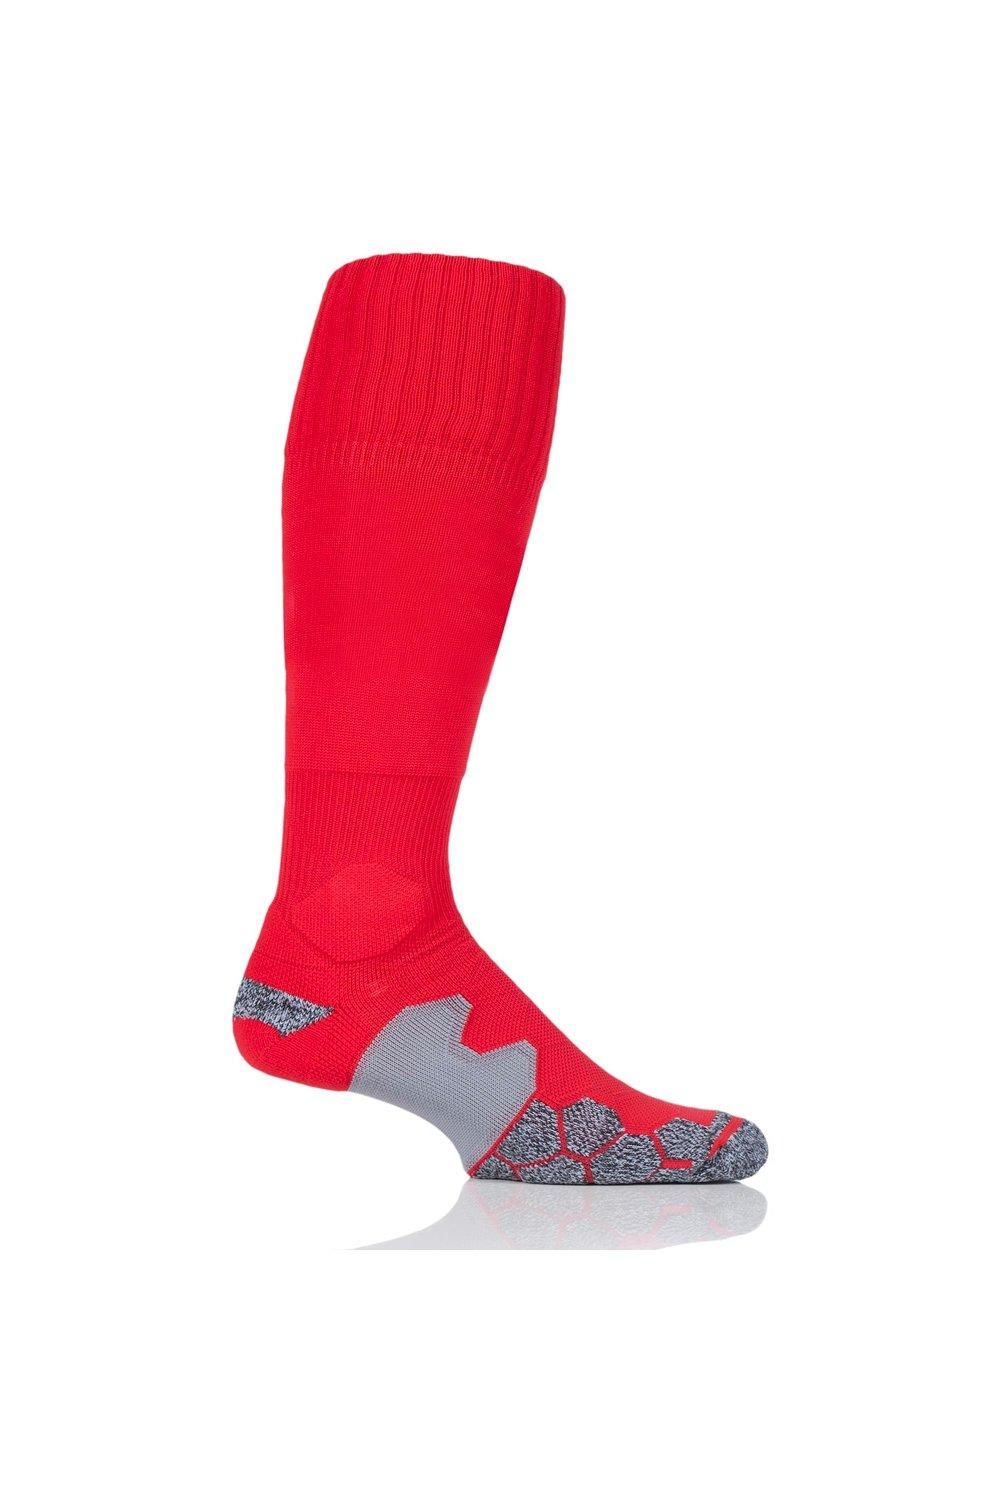 1 пара технических футбольных носков с мягкой подкладкой, произведенных в Великобритании SOCKSHOP of London, красный